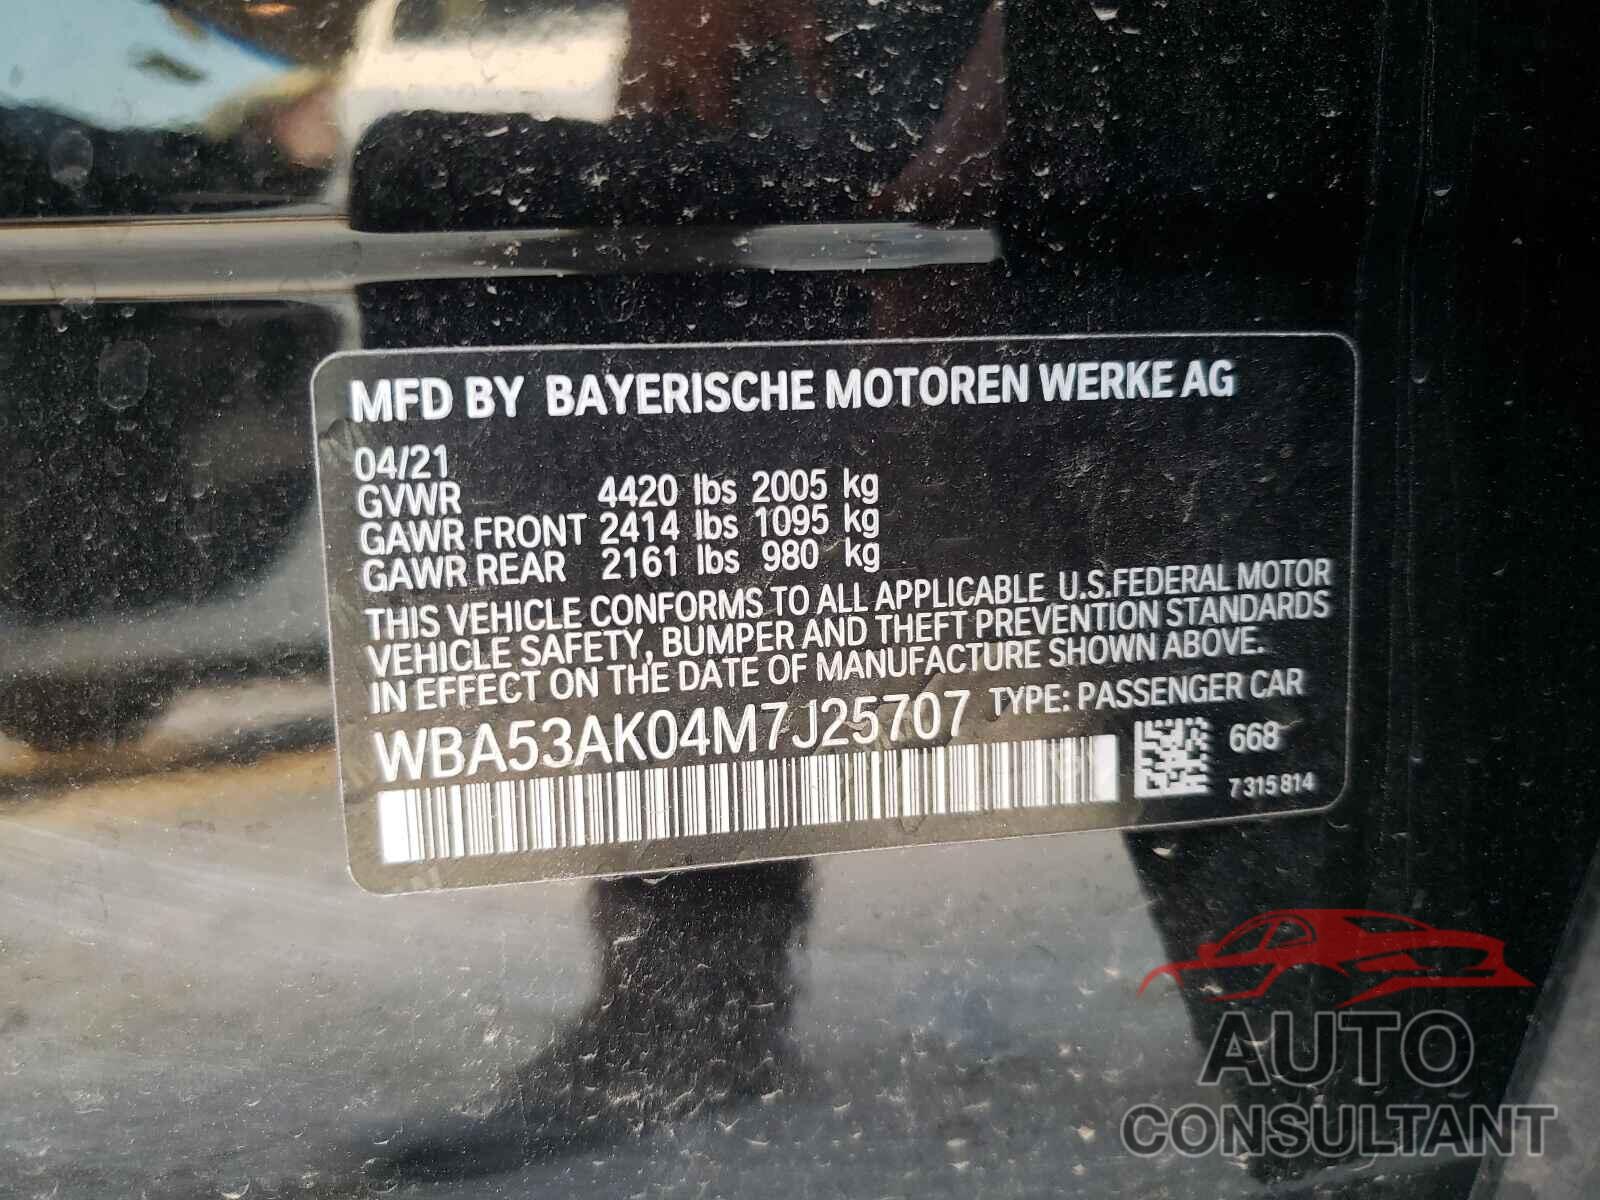 BMW 2 SERIES 2021 - WBA53AK04M7J25707